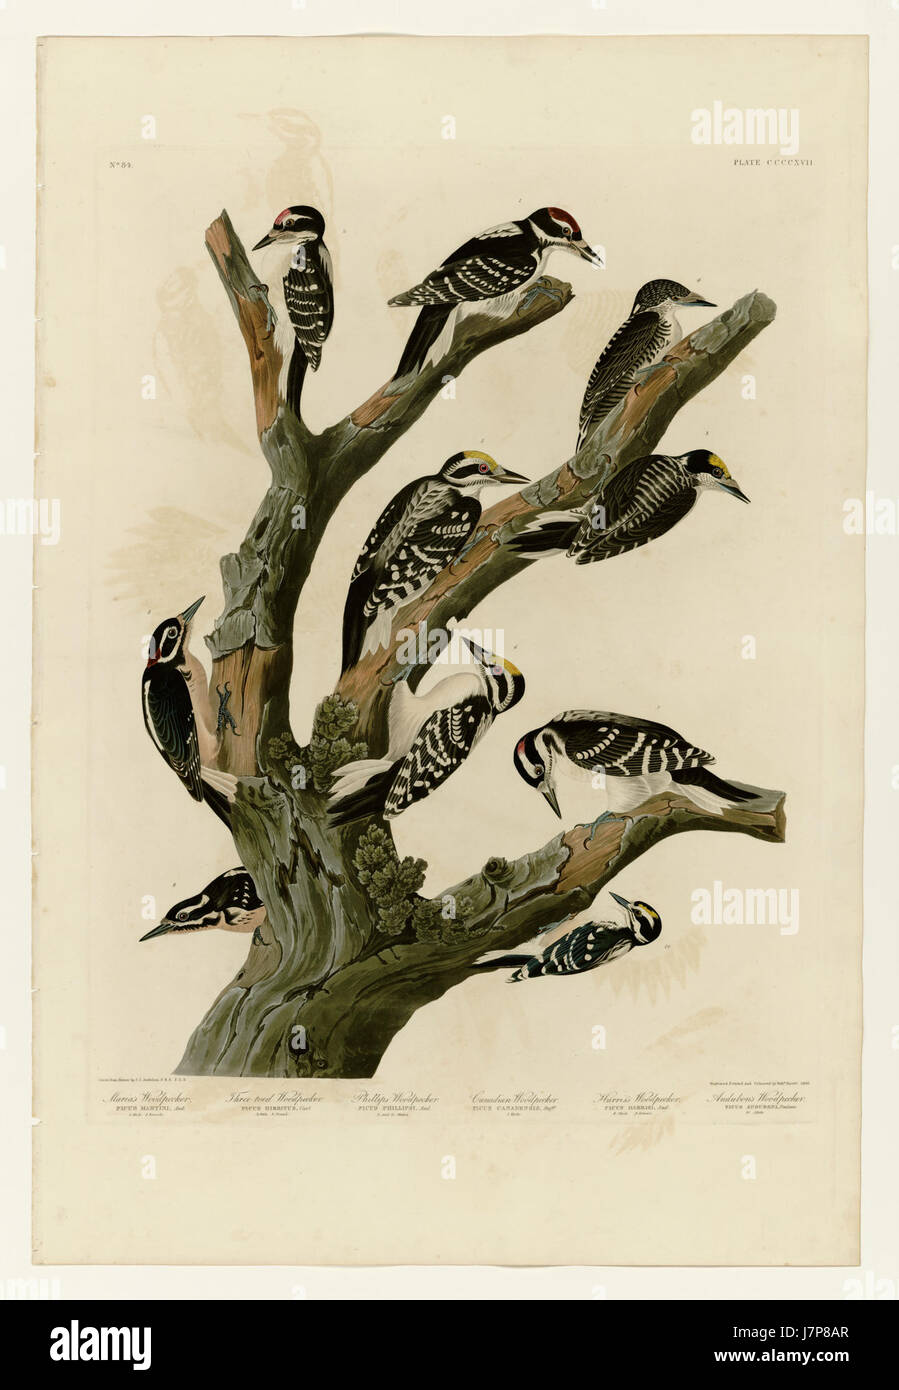 417 I. Maria's Woodpecker   2. Three toed Woodpecker   3. Phillips' Woodpecker   4. Canadian Woodpecker   5. Harris's Woodpecker   6. Audubon's Woodpecker Stock Photo